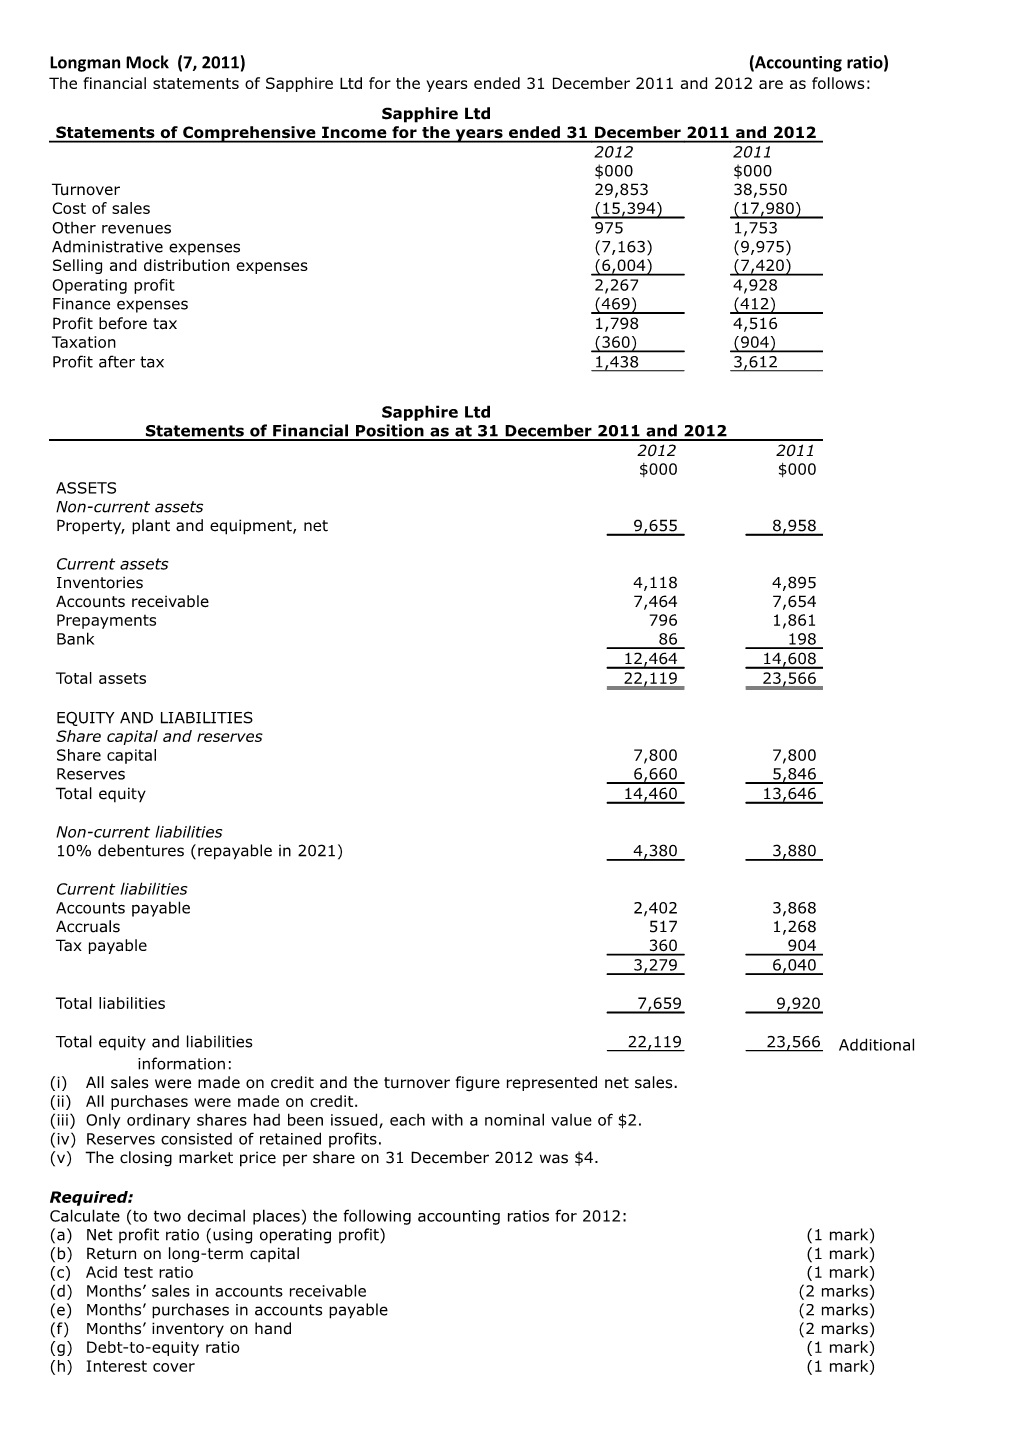 Longman Mock (7, 2011) (Accounting Ratio)